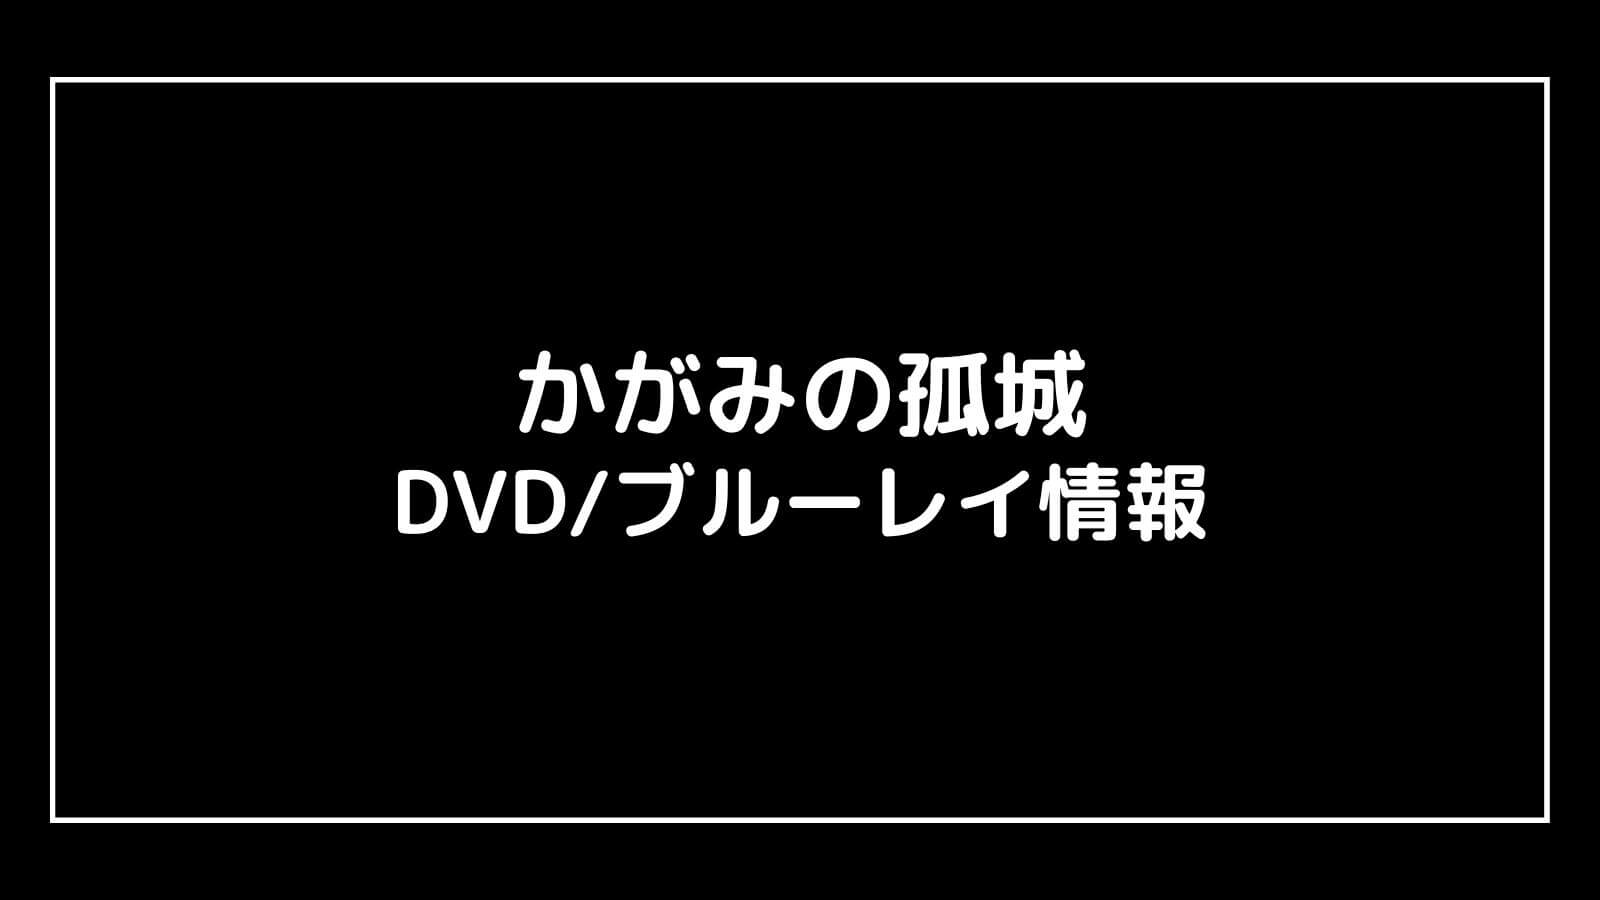 映画『かがみの孤城』DVDブルーレイの特典情報まとめ【予約開始日